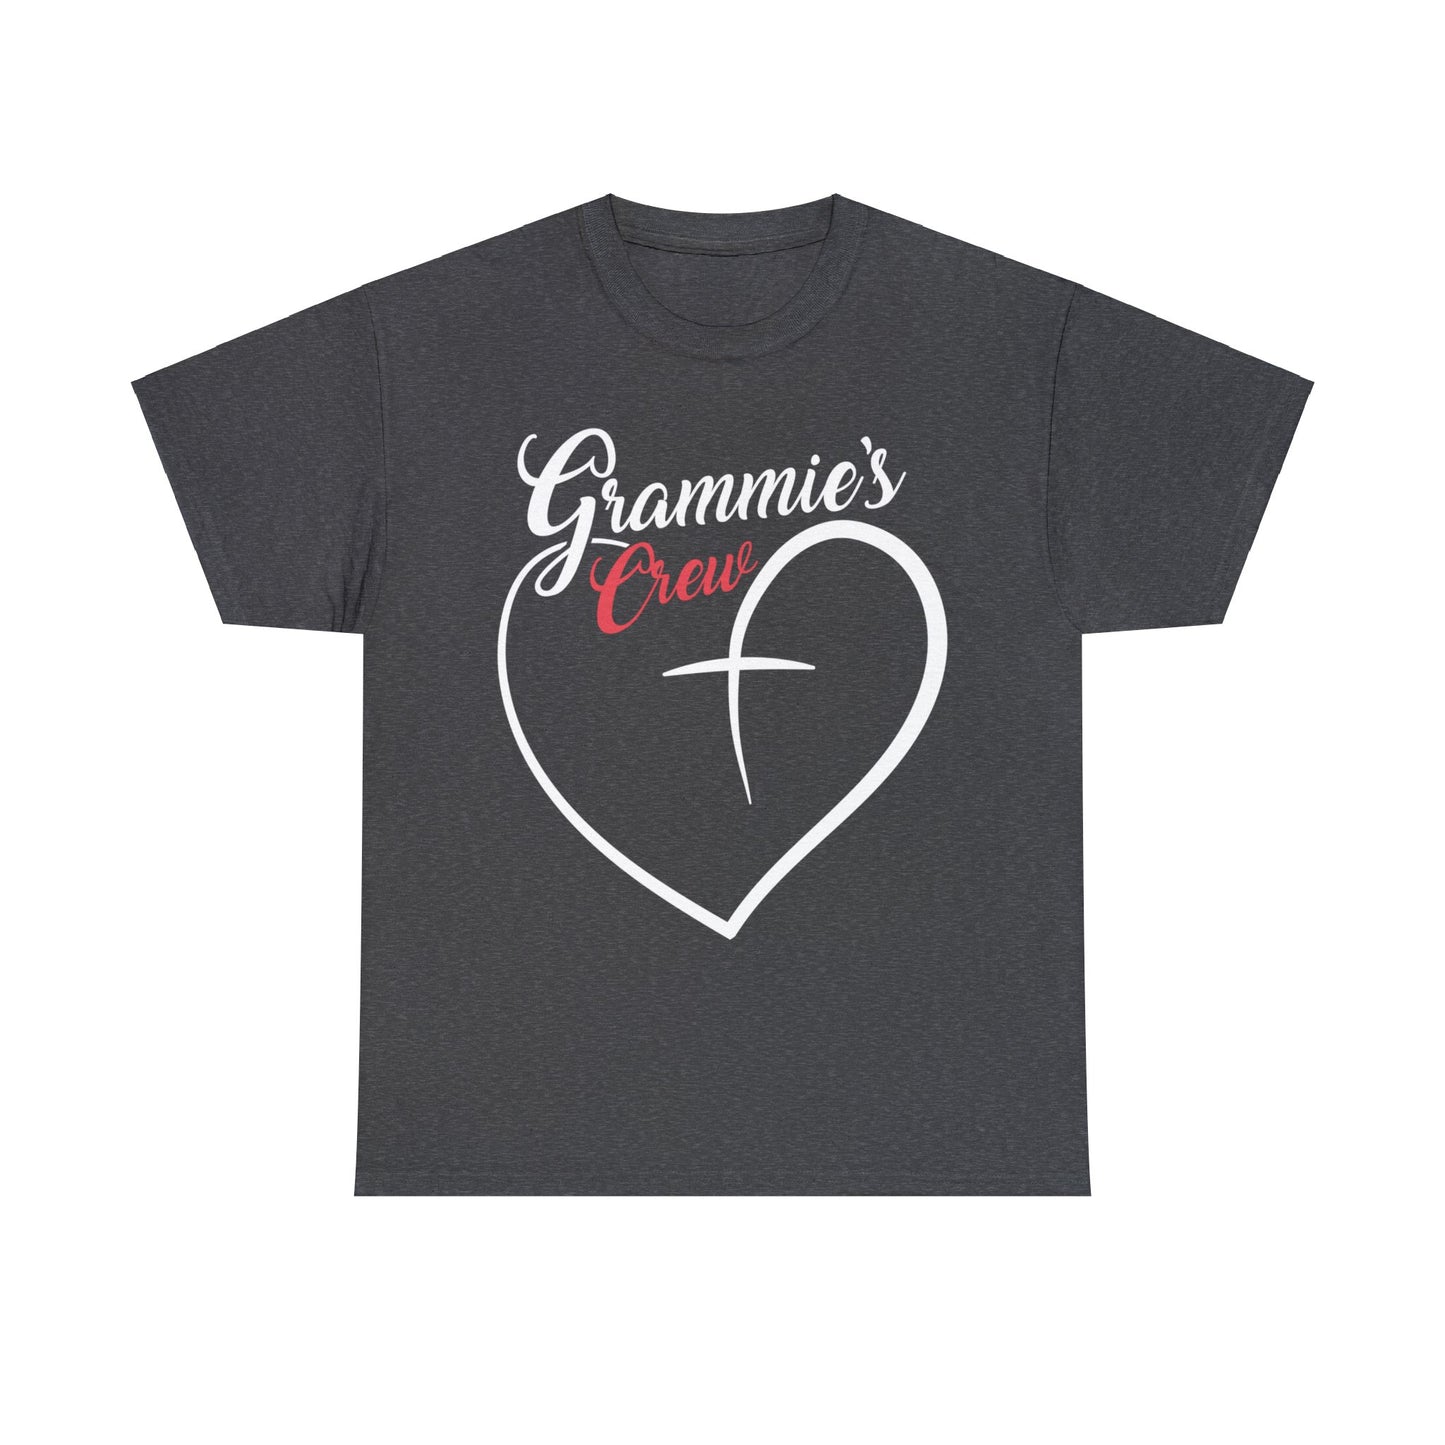 Grammies Crew Shirt, Grandma Shirt, Gift for Grammy, Best Grammy Ever Shirt, Mother's Day Shirt